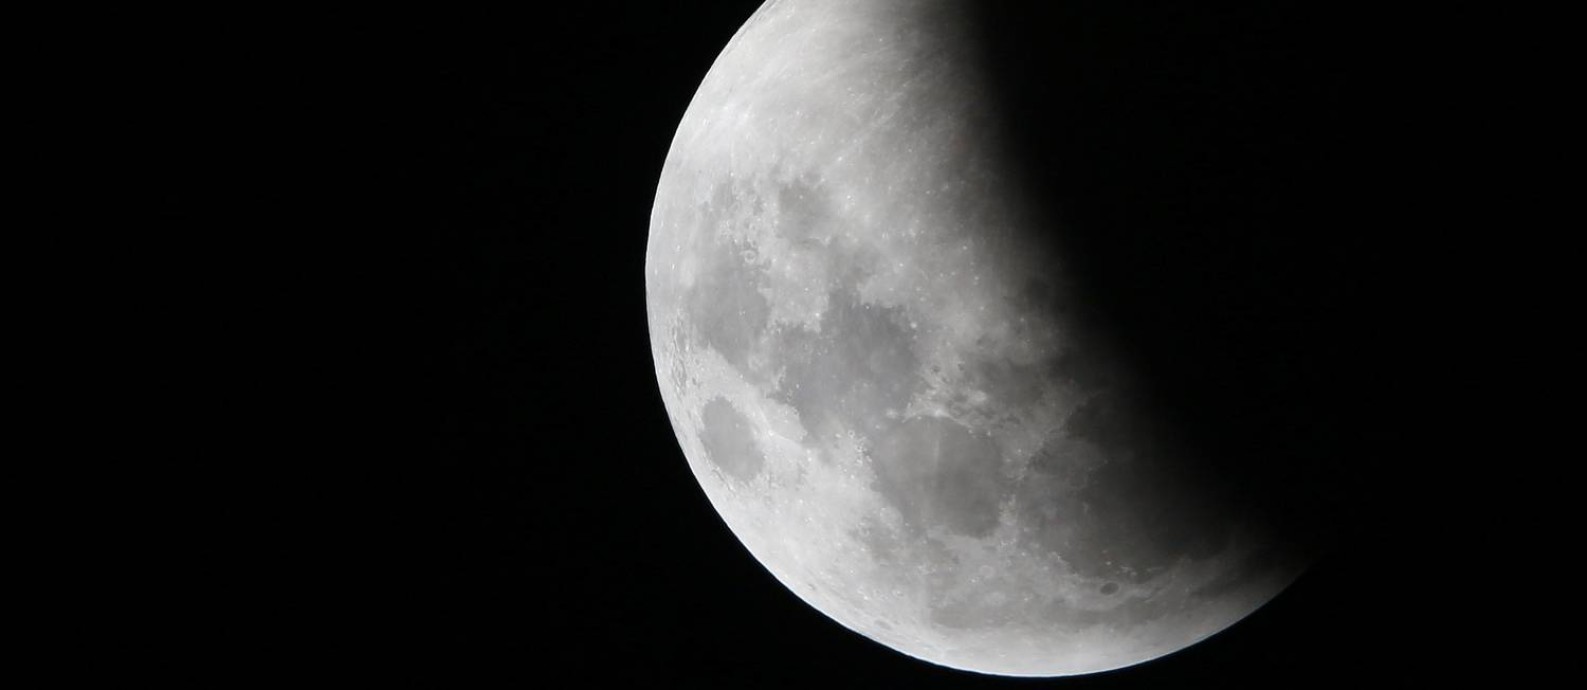 A Lua durante o eclipse do dia 21 de janeiro, clicada a partir de Manaus, capital do Amazonas Foto: BRUNO KELLY / REUTERS/21-01-2019